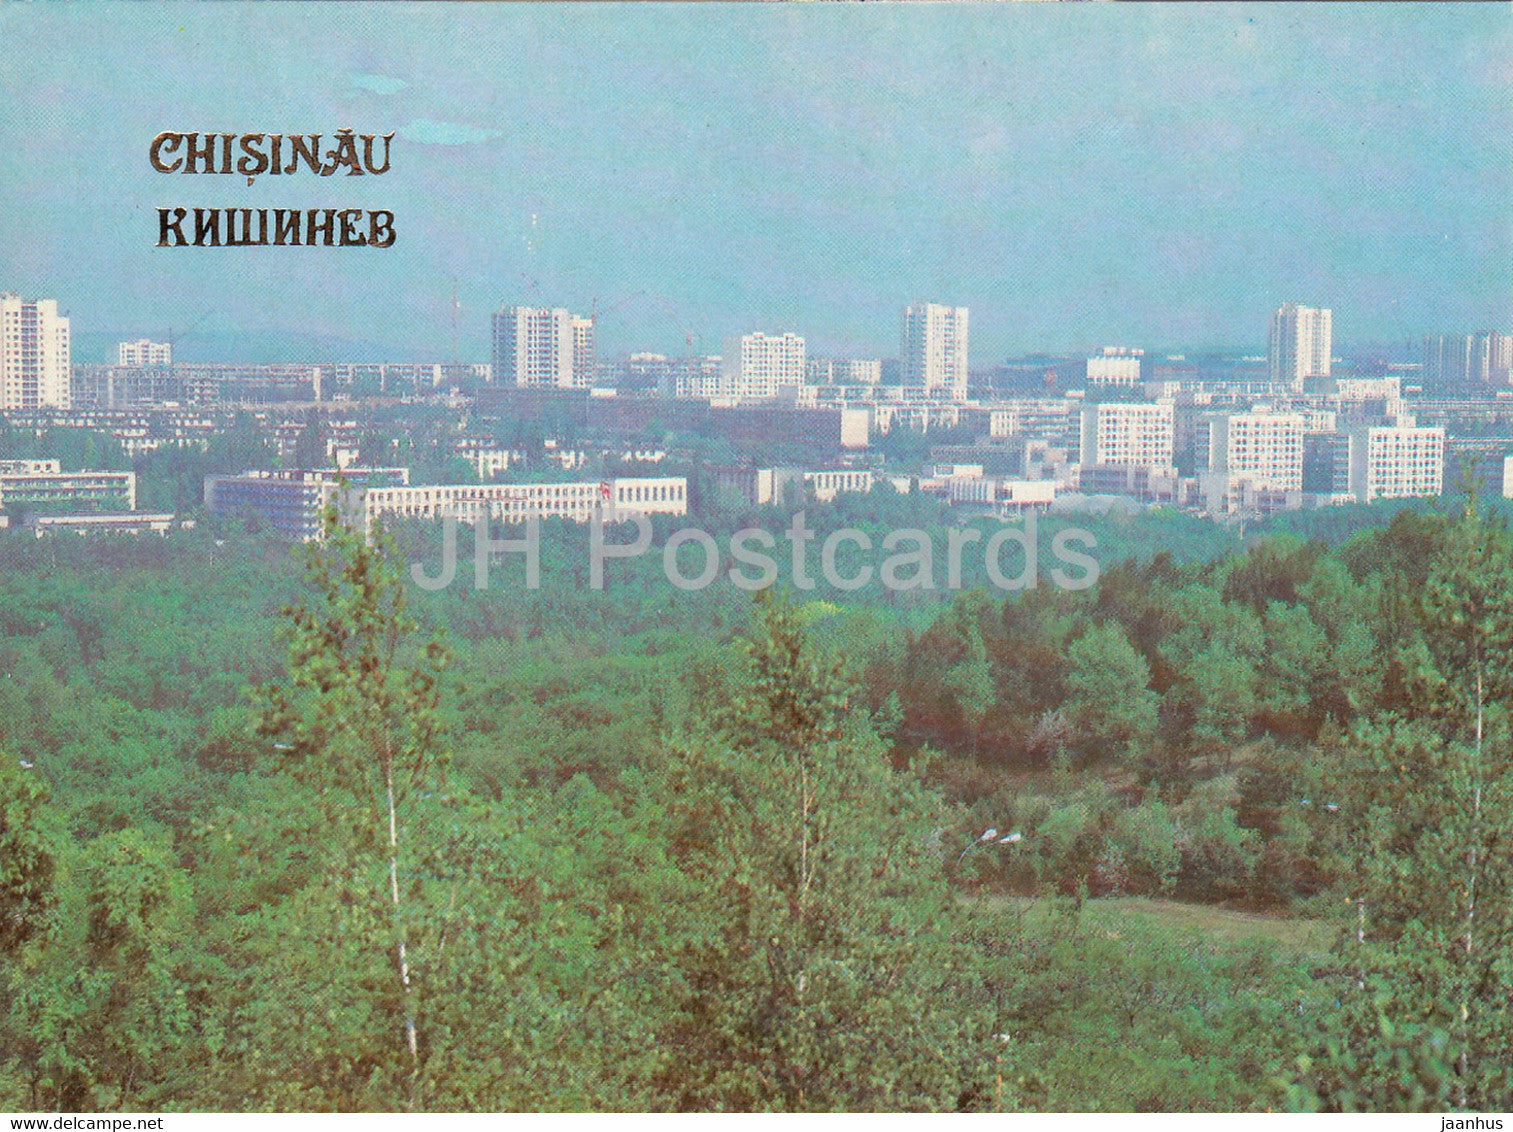 Chisinau - Kishinev - Residential area - 1989 - Moldova USSR - unused - JH Postcards